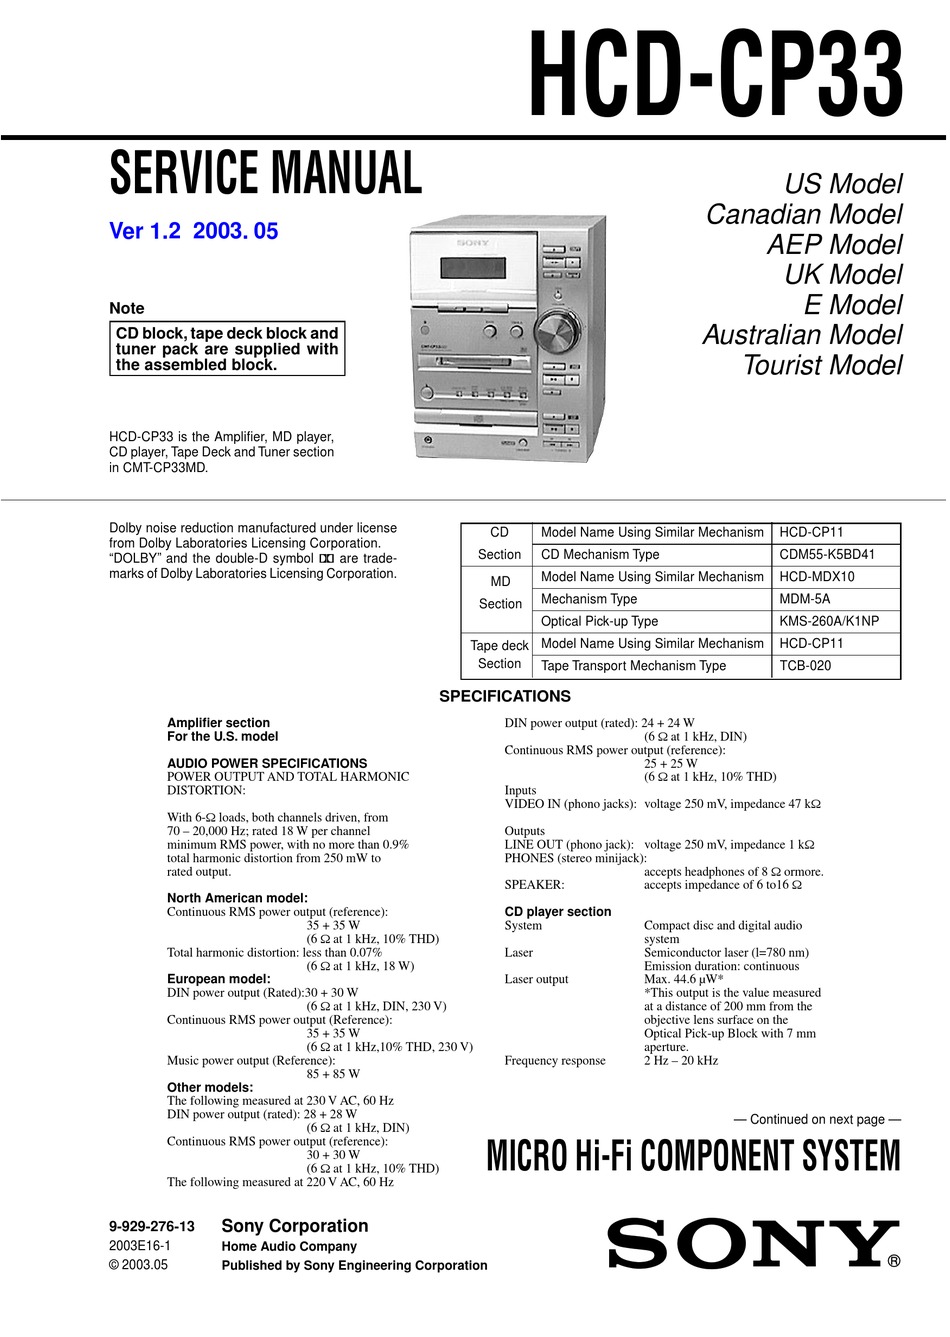 #3364 CMT Sony Manuale di Istruzioni Cmt CP33MD Componente Sistema 